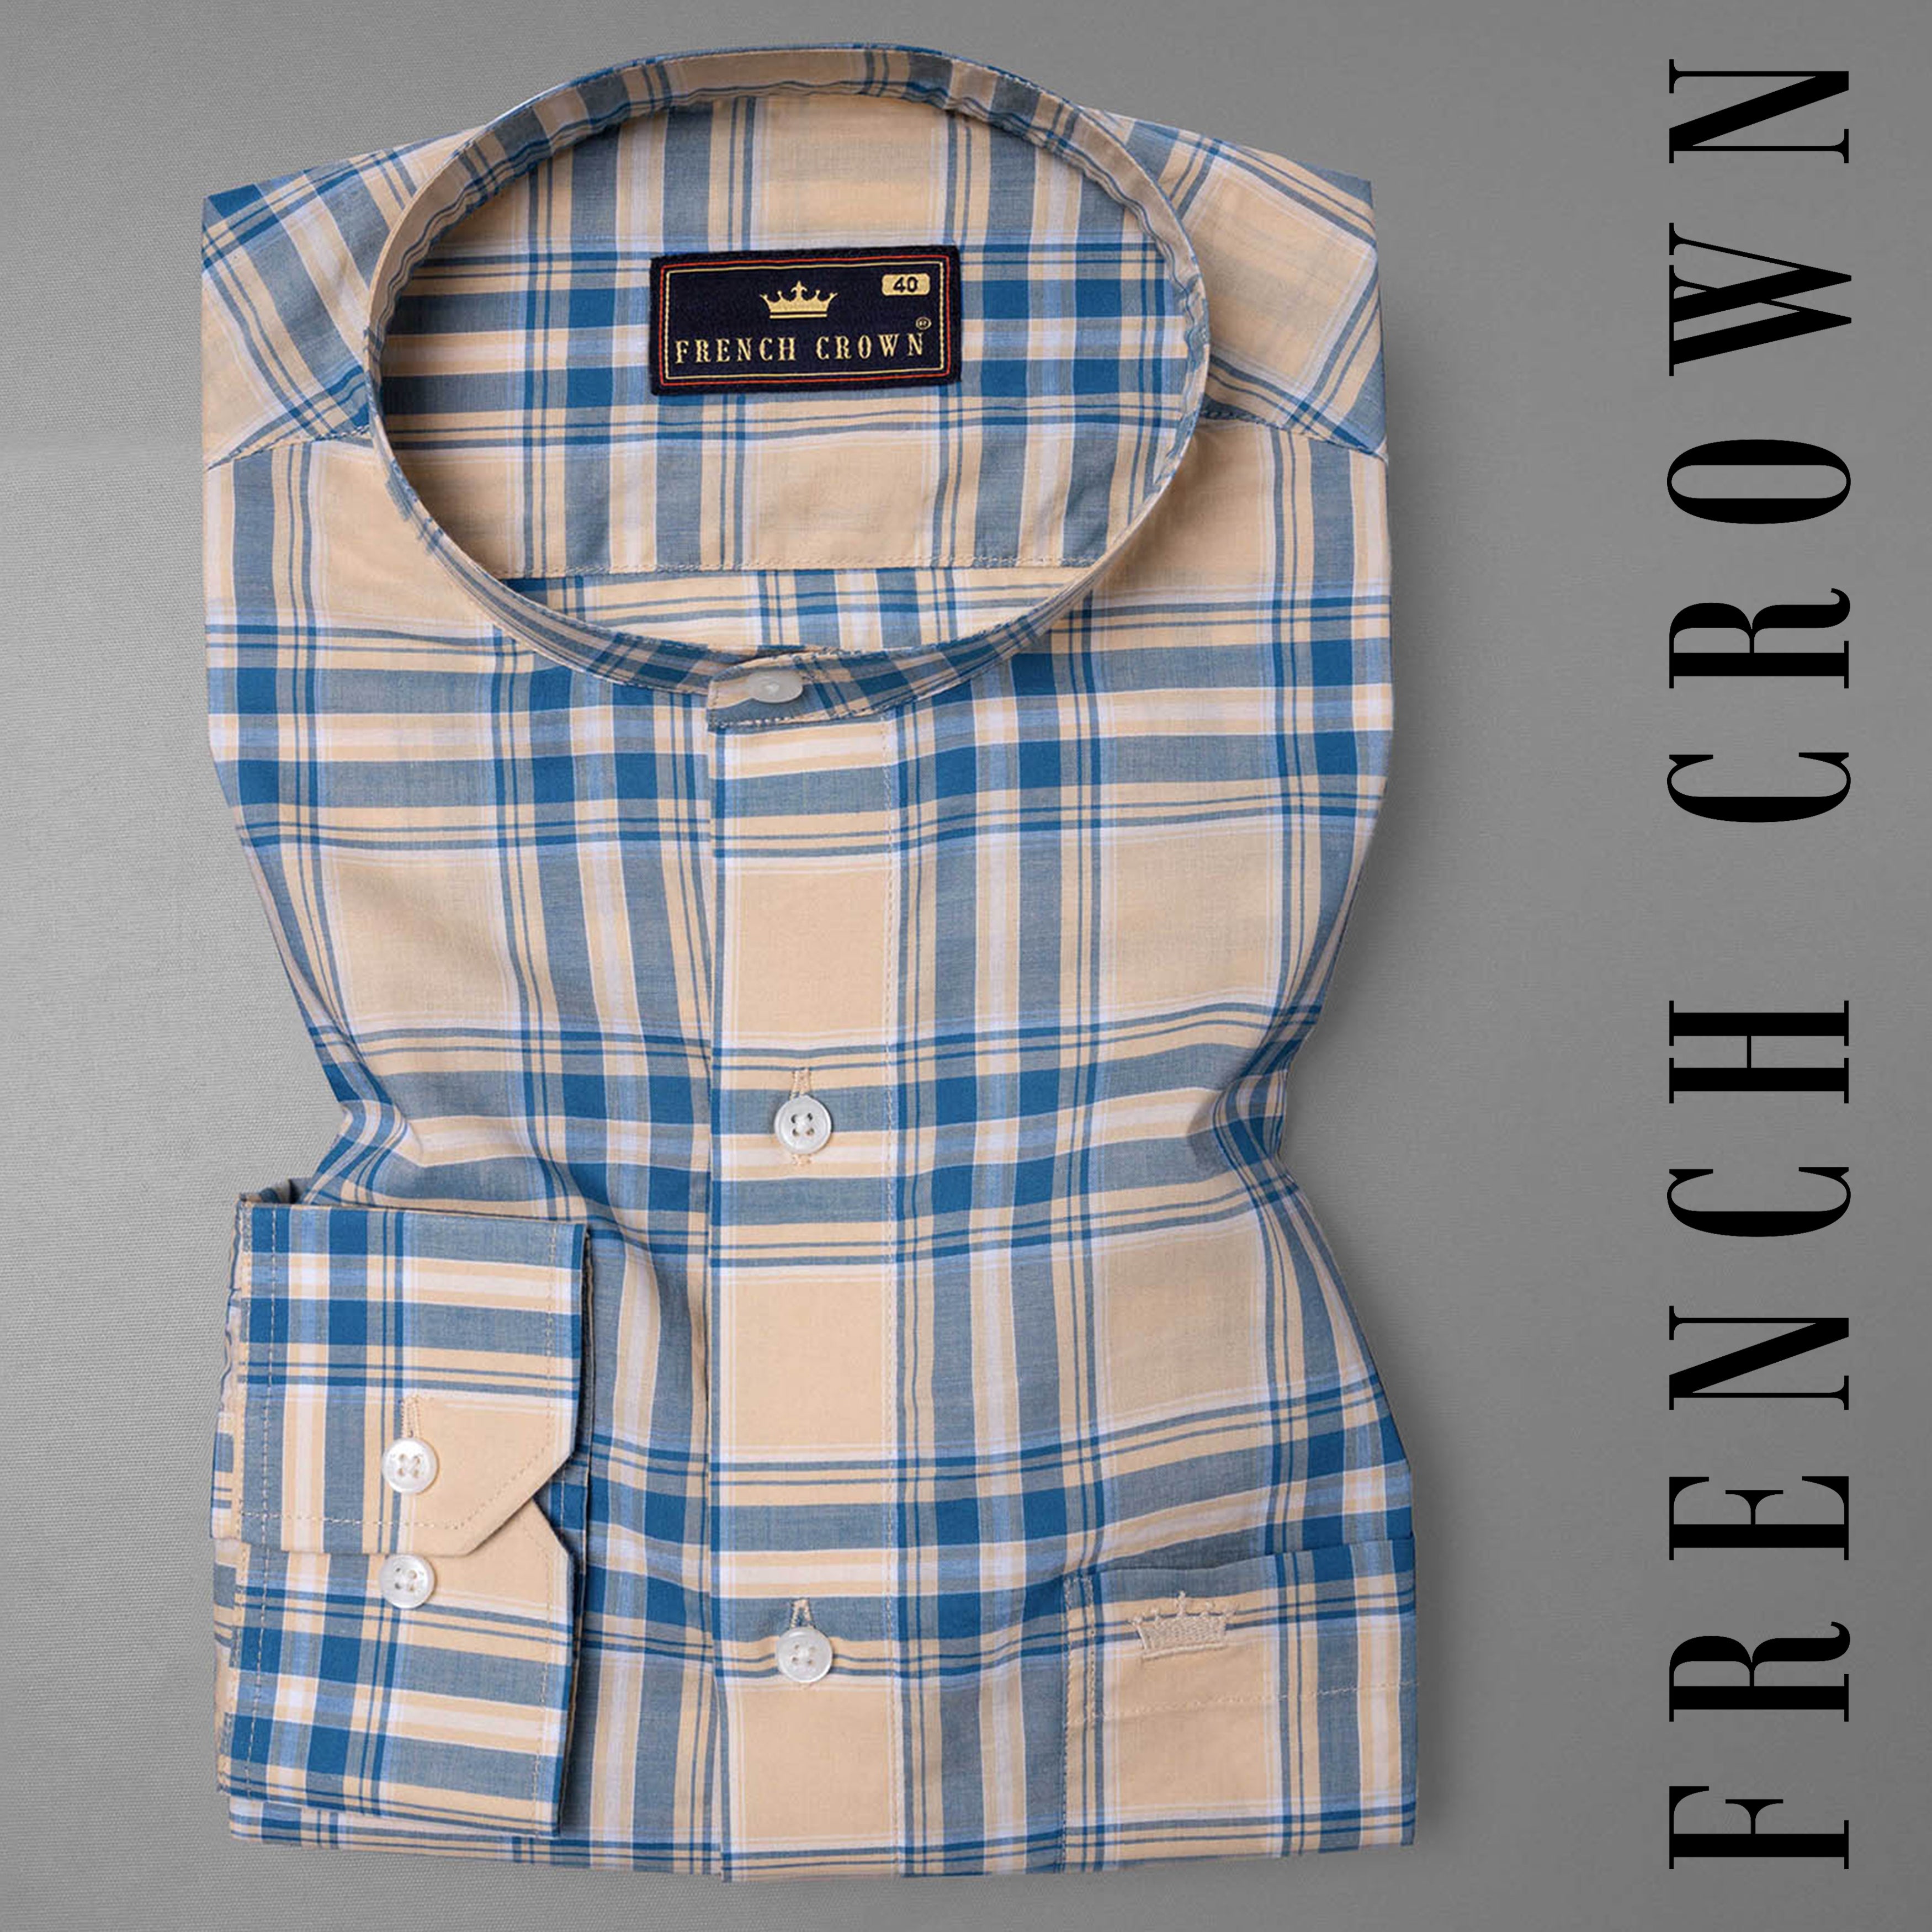 Zinnwaldite Brown and Bali Hai Blue Plaid Premium Cotton Shirt